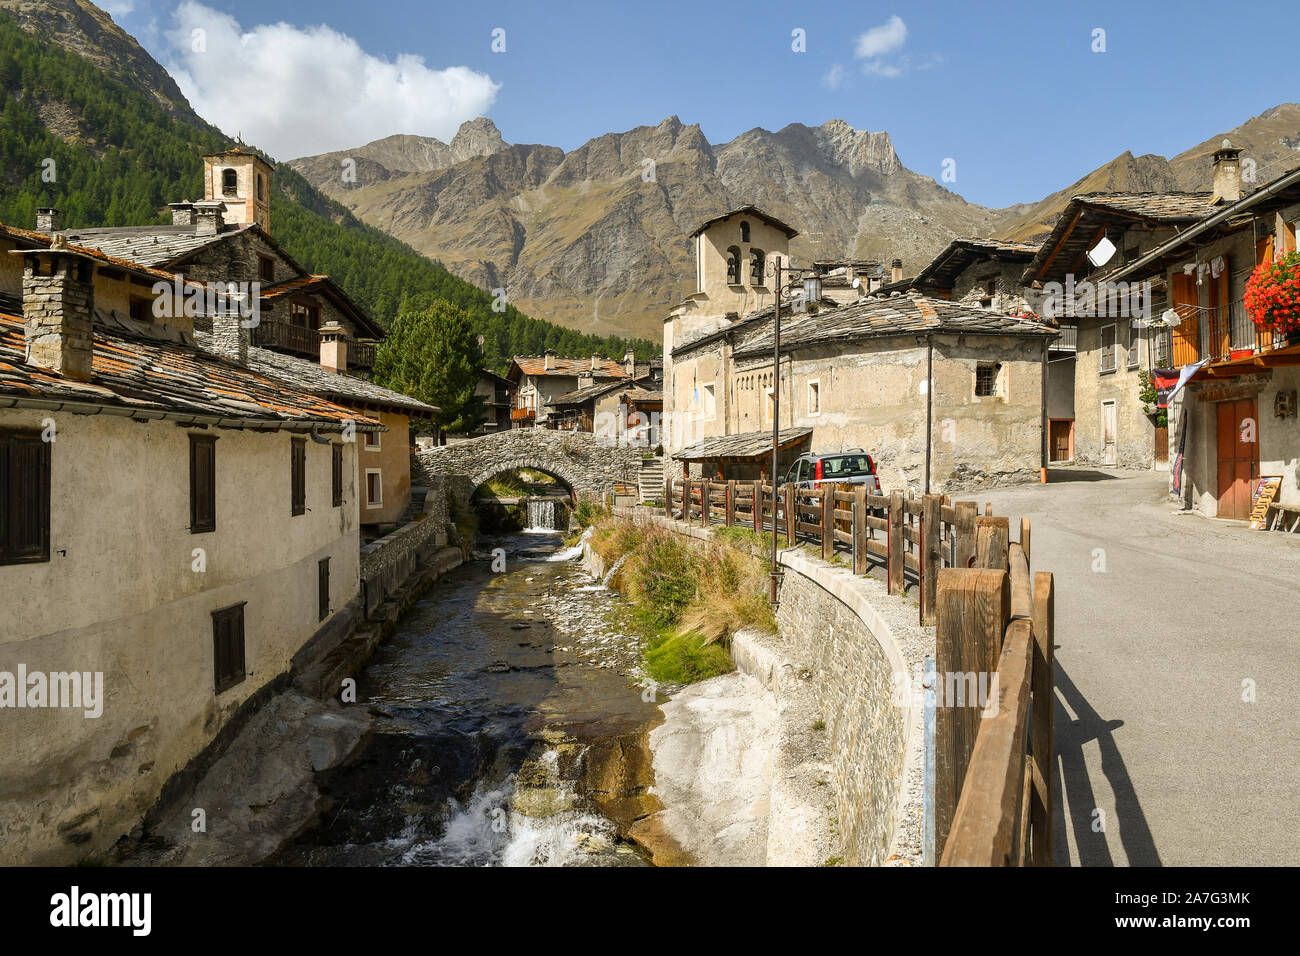 Malerischer Blick auf die Alpine Dorf Chianale, Teil der schönsten Dörfer Italiens, mit der varaita Fluss im Sommer, Cuneo, Piemont, Italien Stockfoto